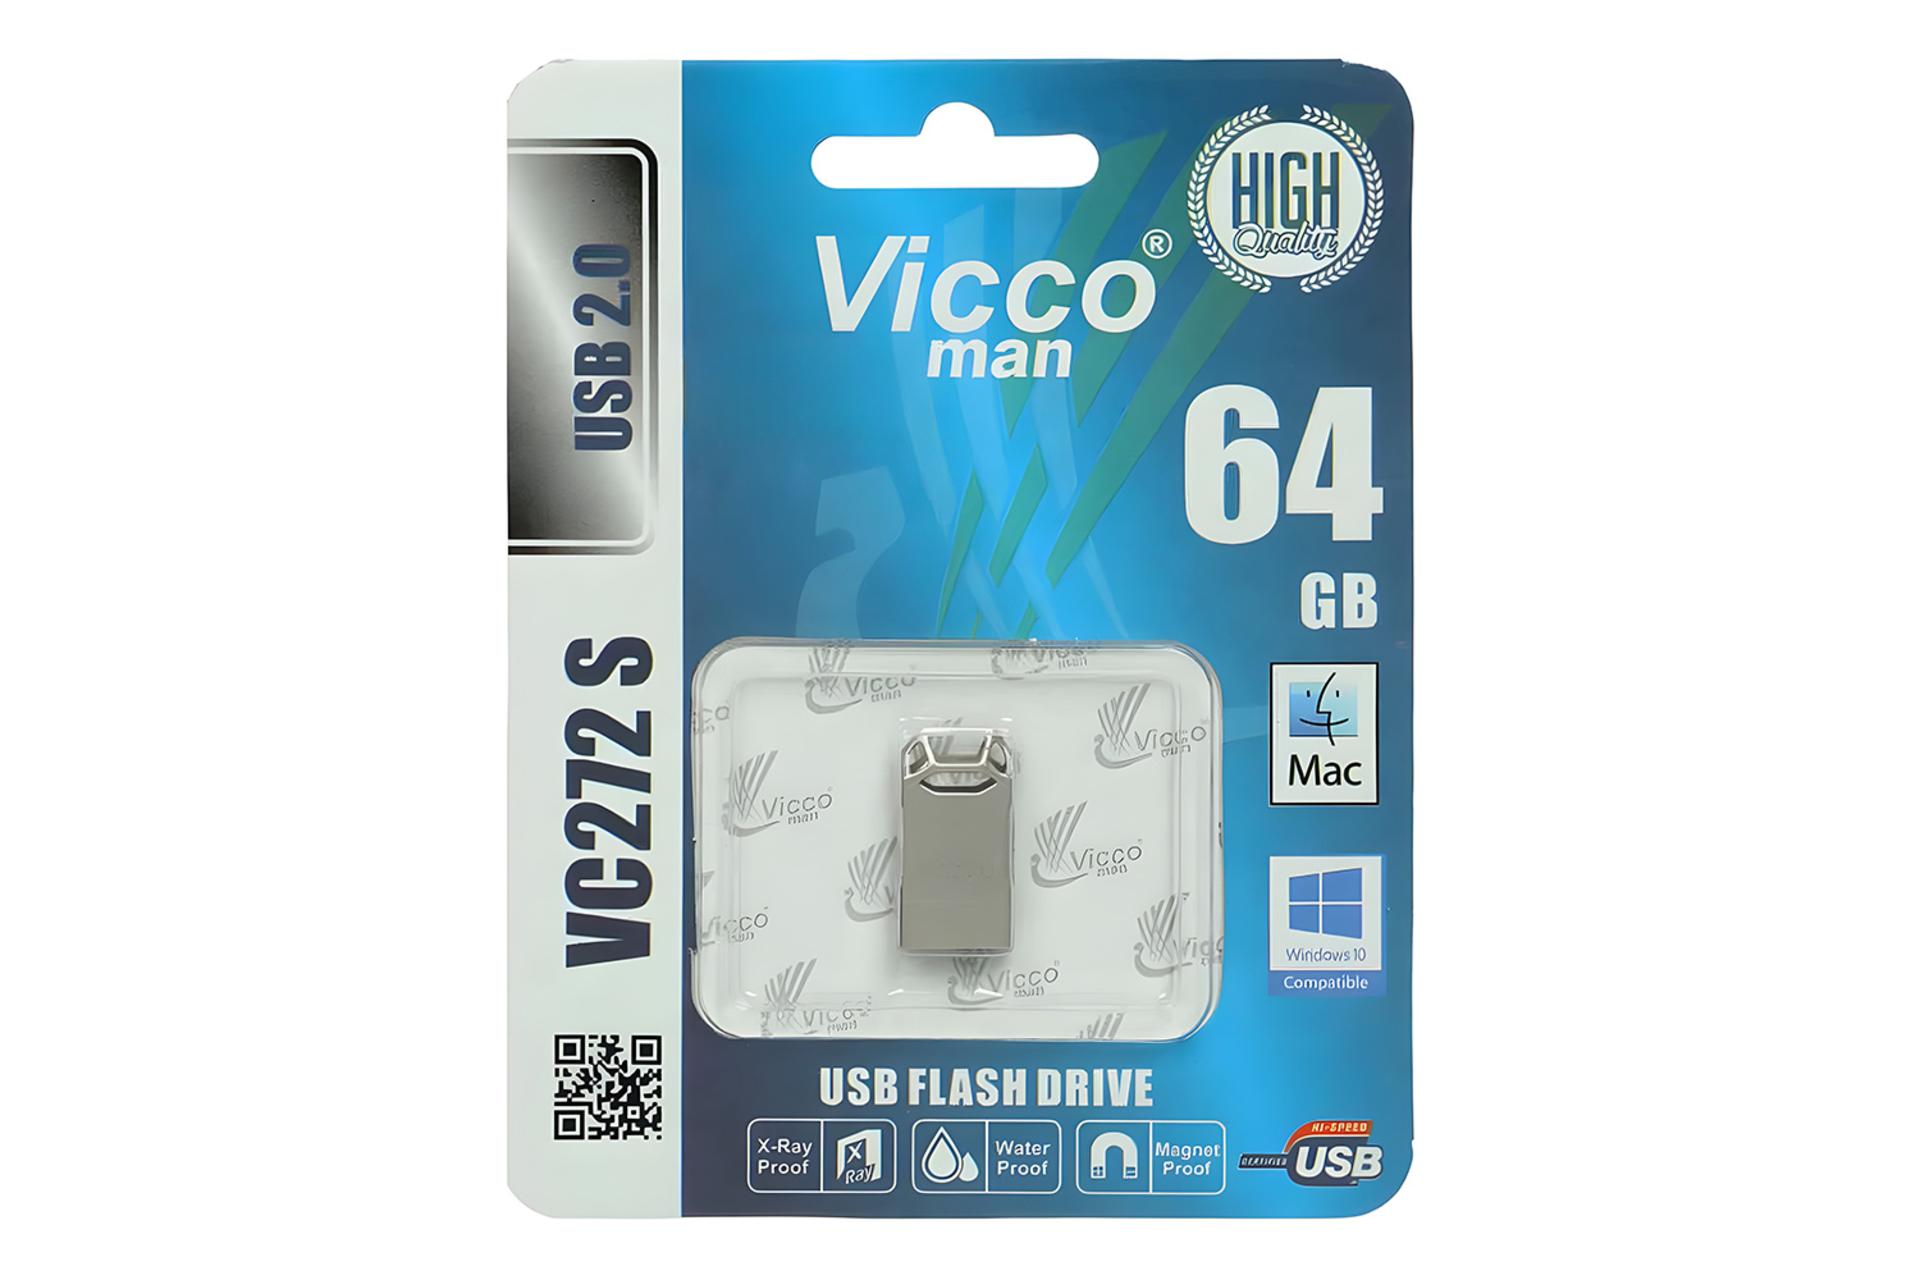 جعبه فلش مموری ویکومن Viccoman VC272 S 64GB USB 2.0